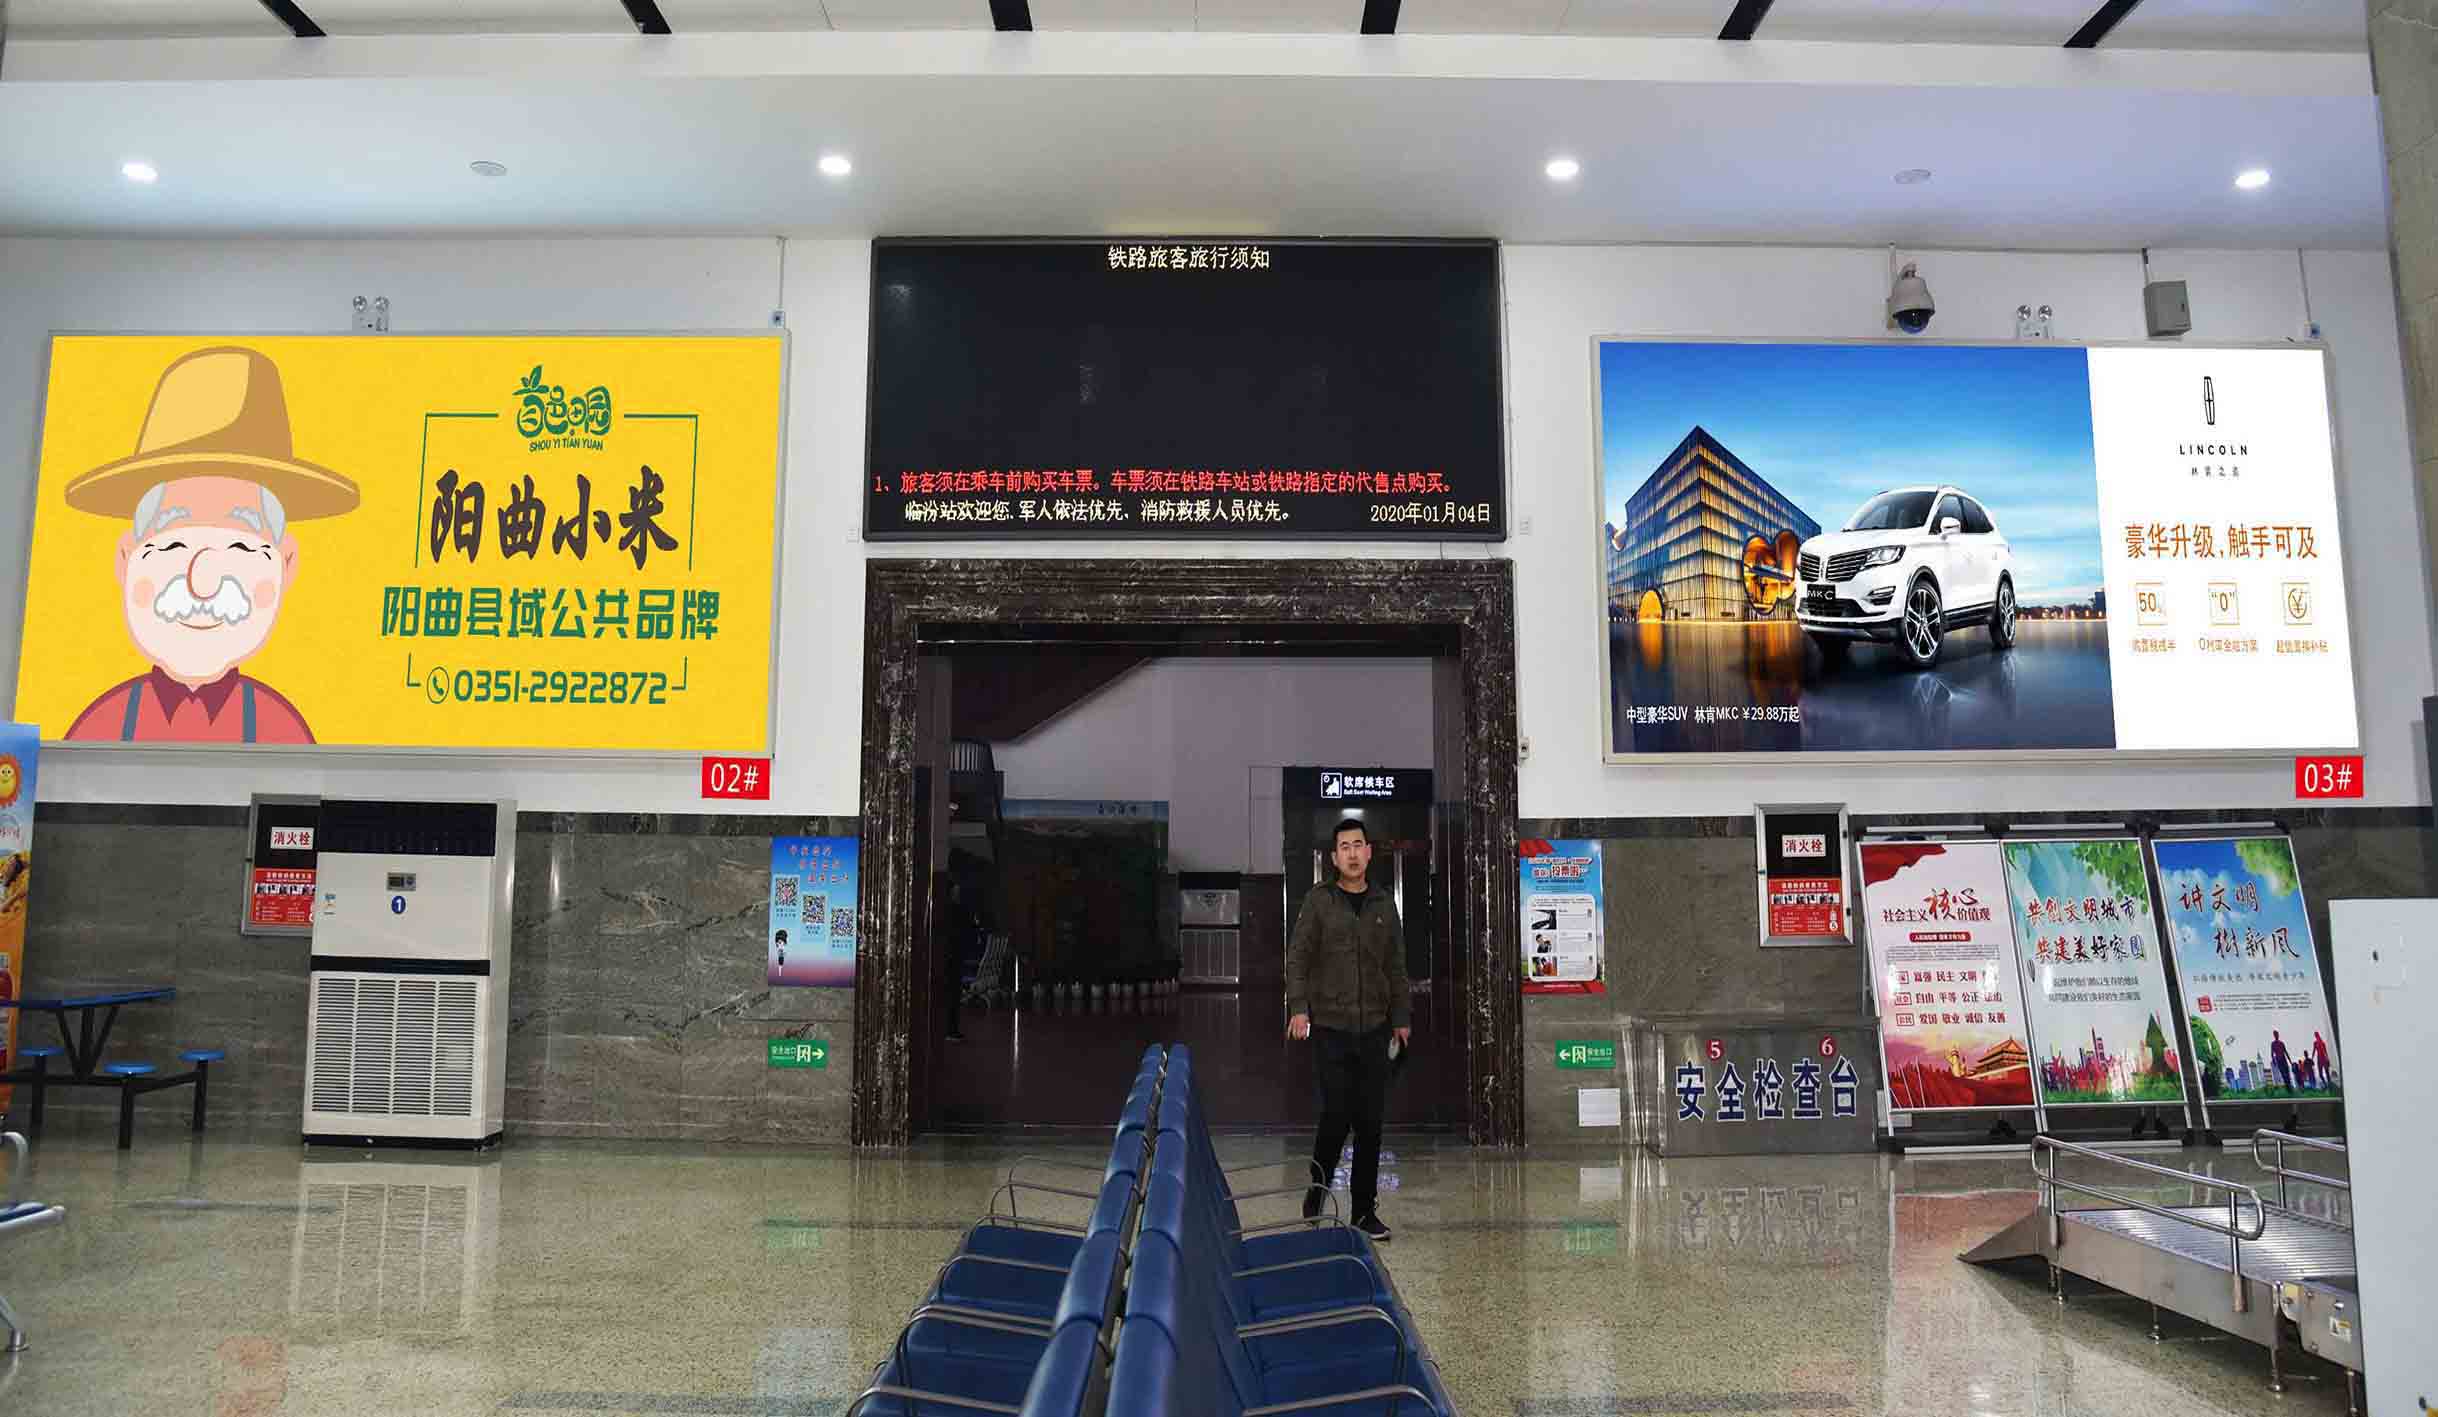 临汾火车站一层候车室灯箱广告2#、3#